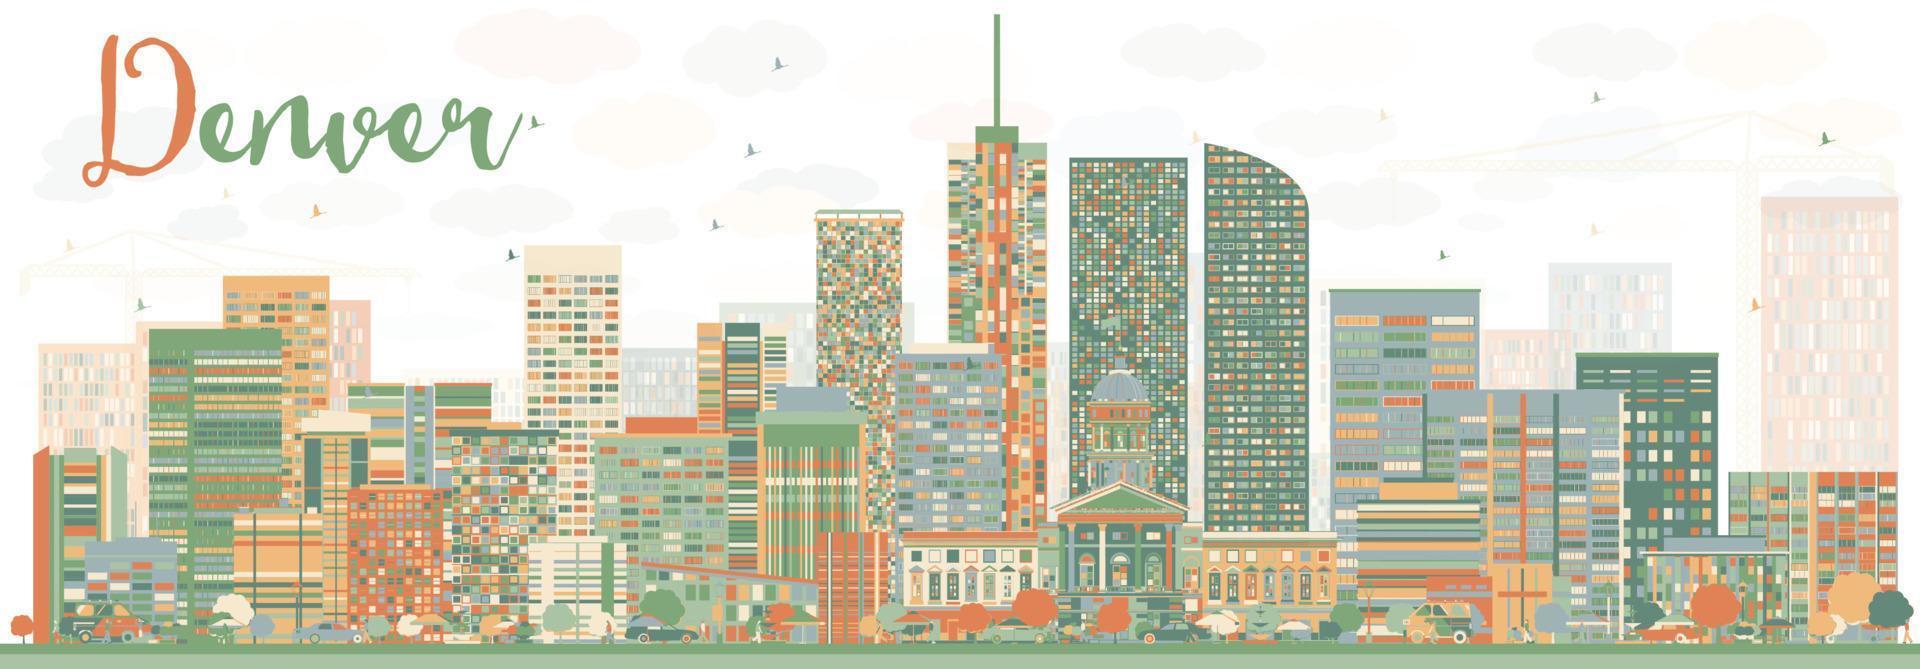 abstrakte Skyline von Denver mit farbigen Gebäuden. vektor